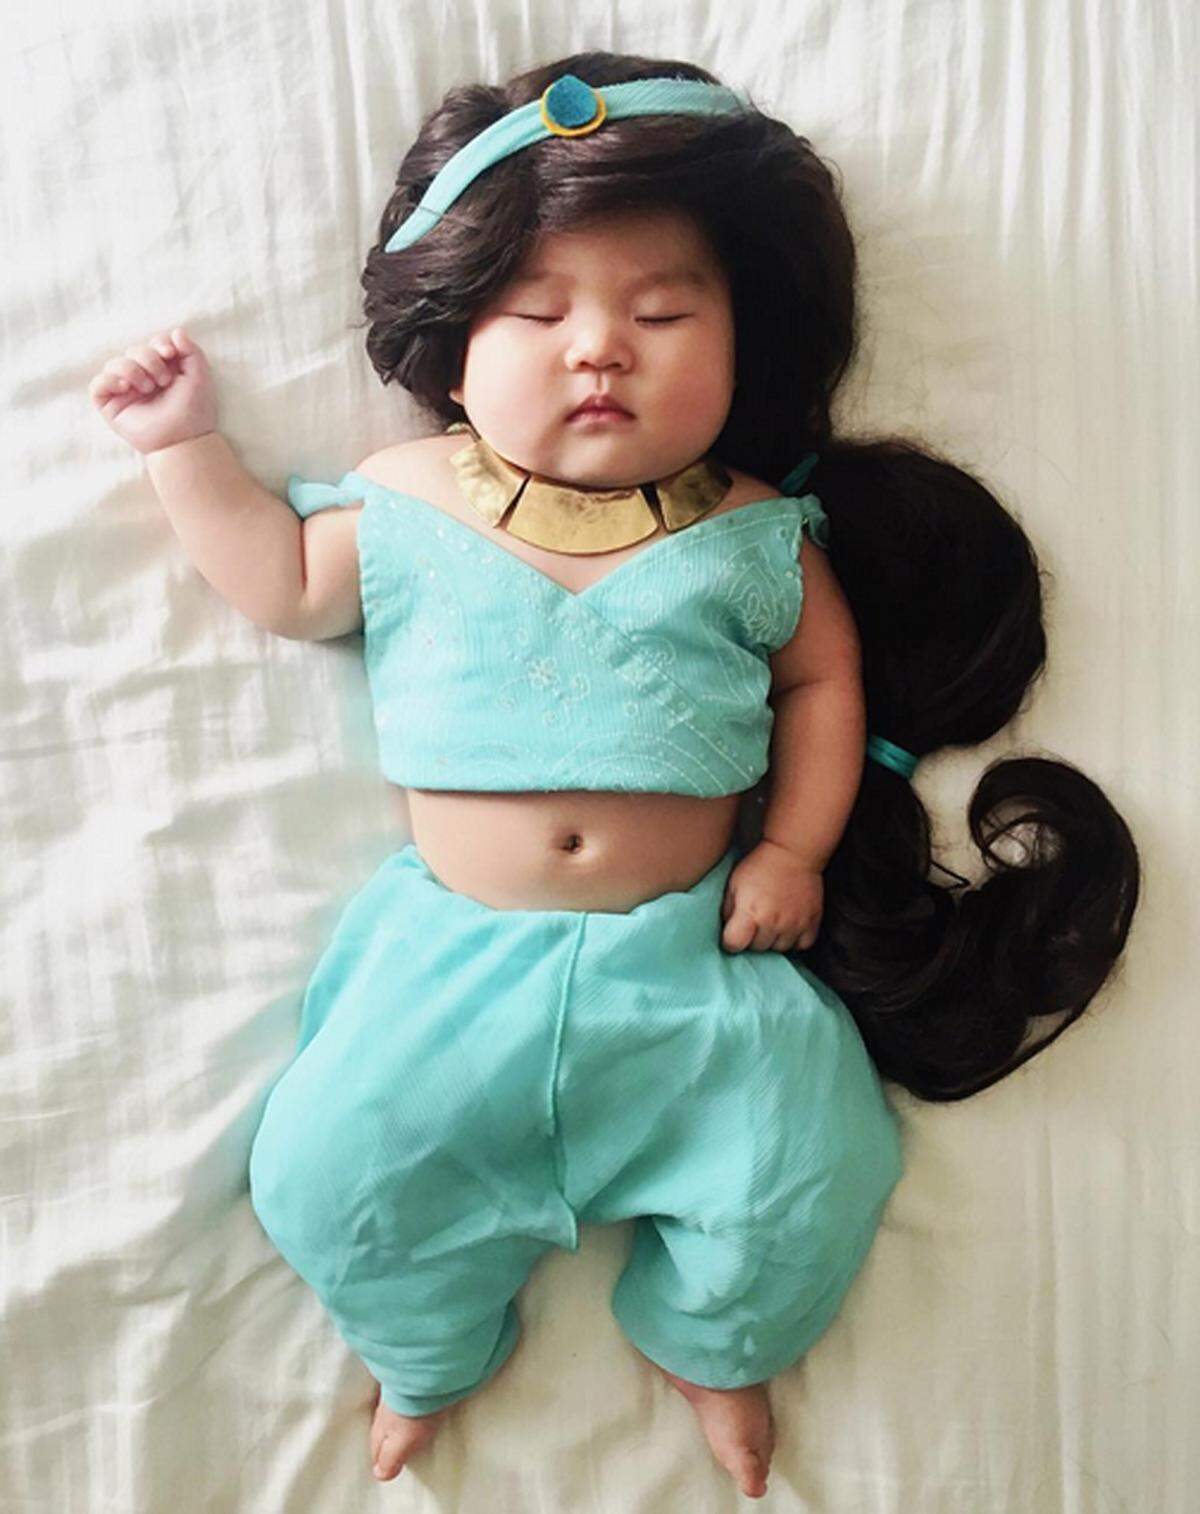 Disneys Jasmin wurde von dem Säugling besonders schön in Szene gesetzt.